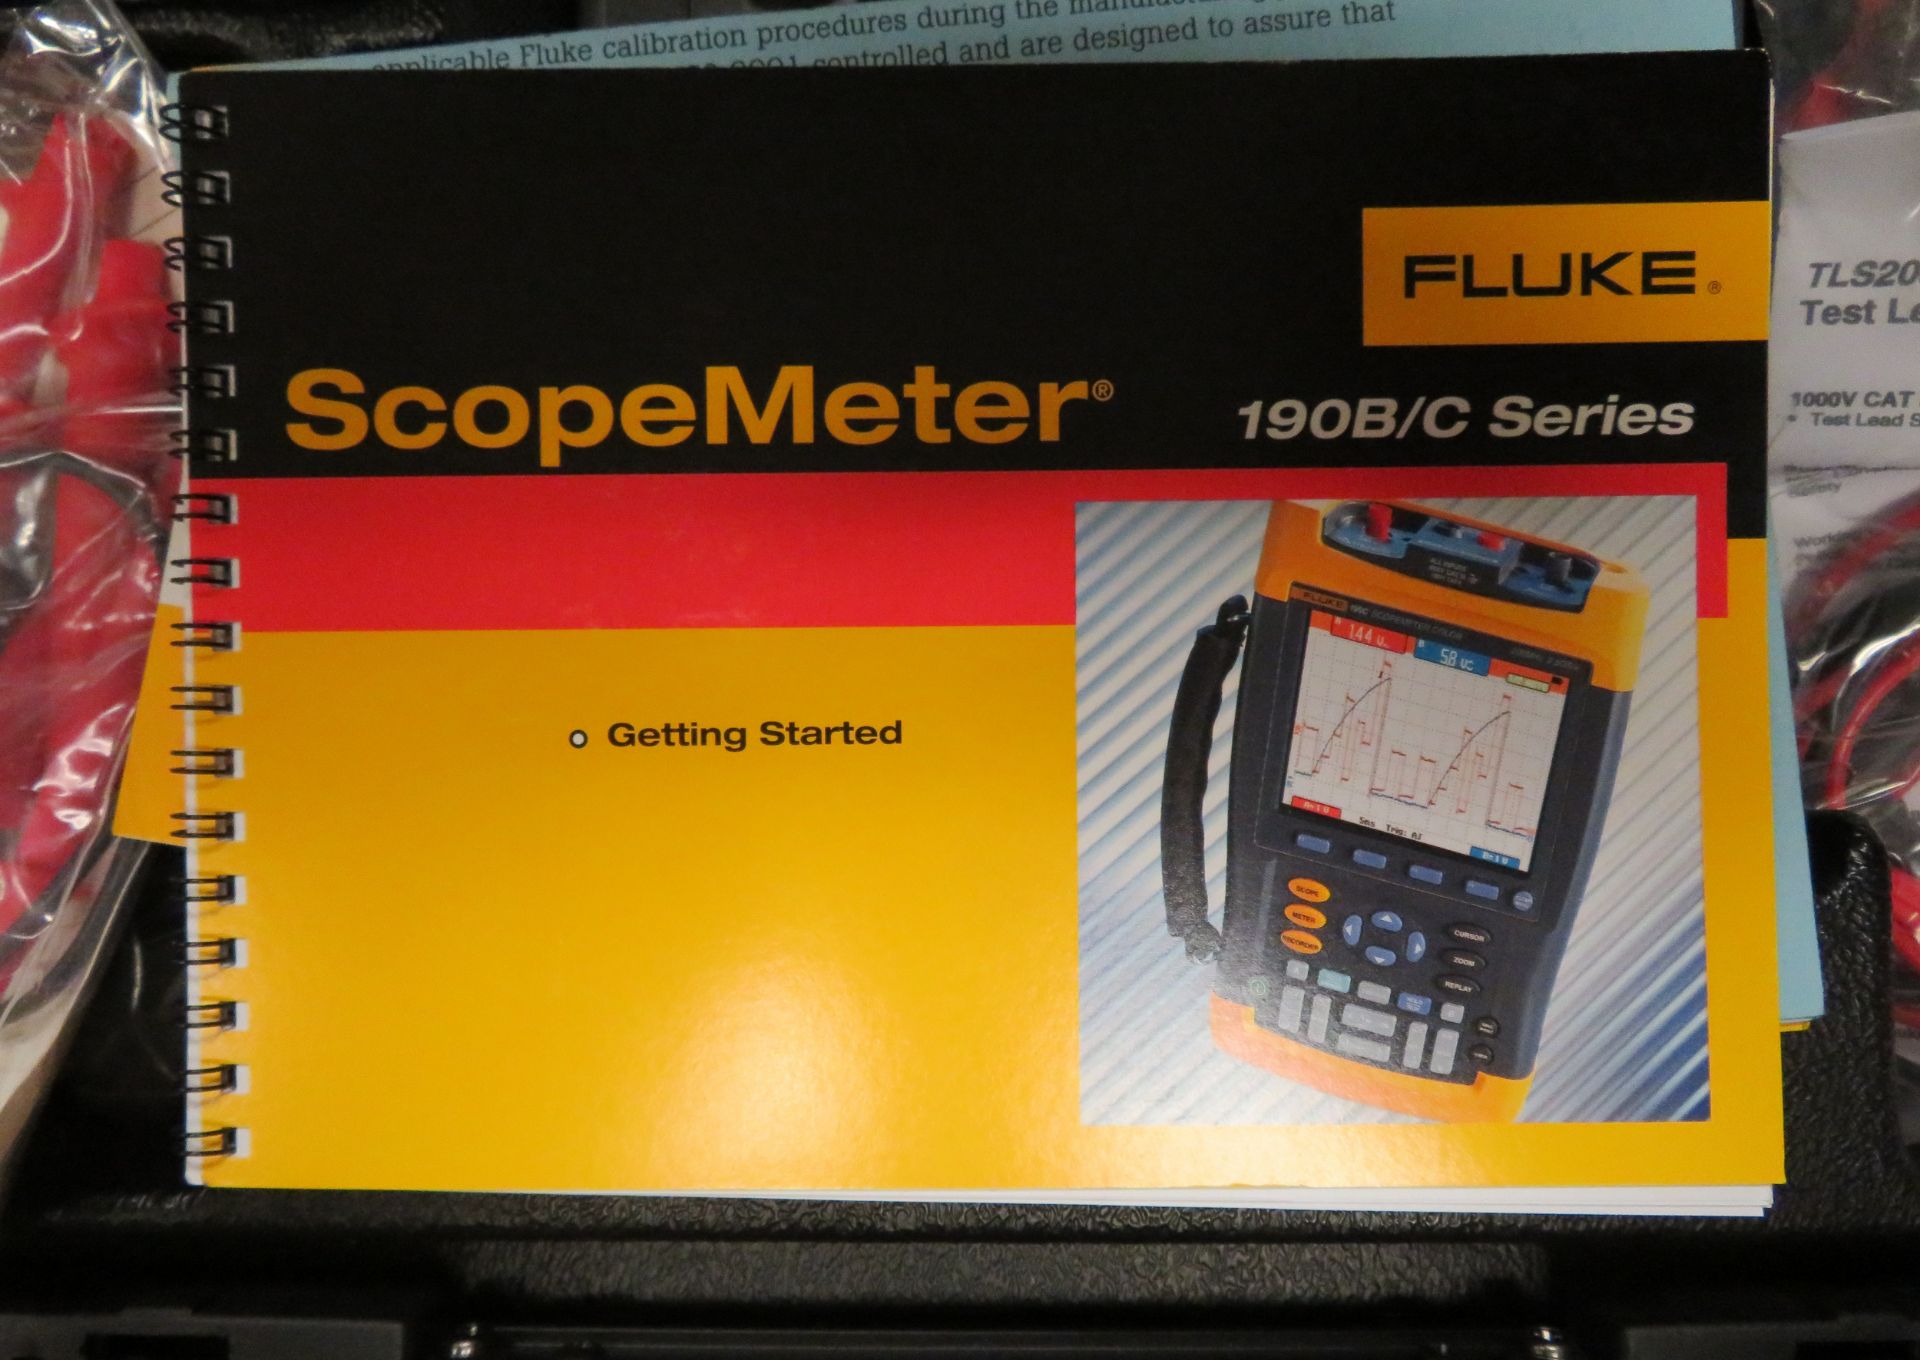 Fluke 199C Scopemeter Color 200MHz in Case. - Image 6 of 6